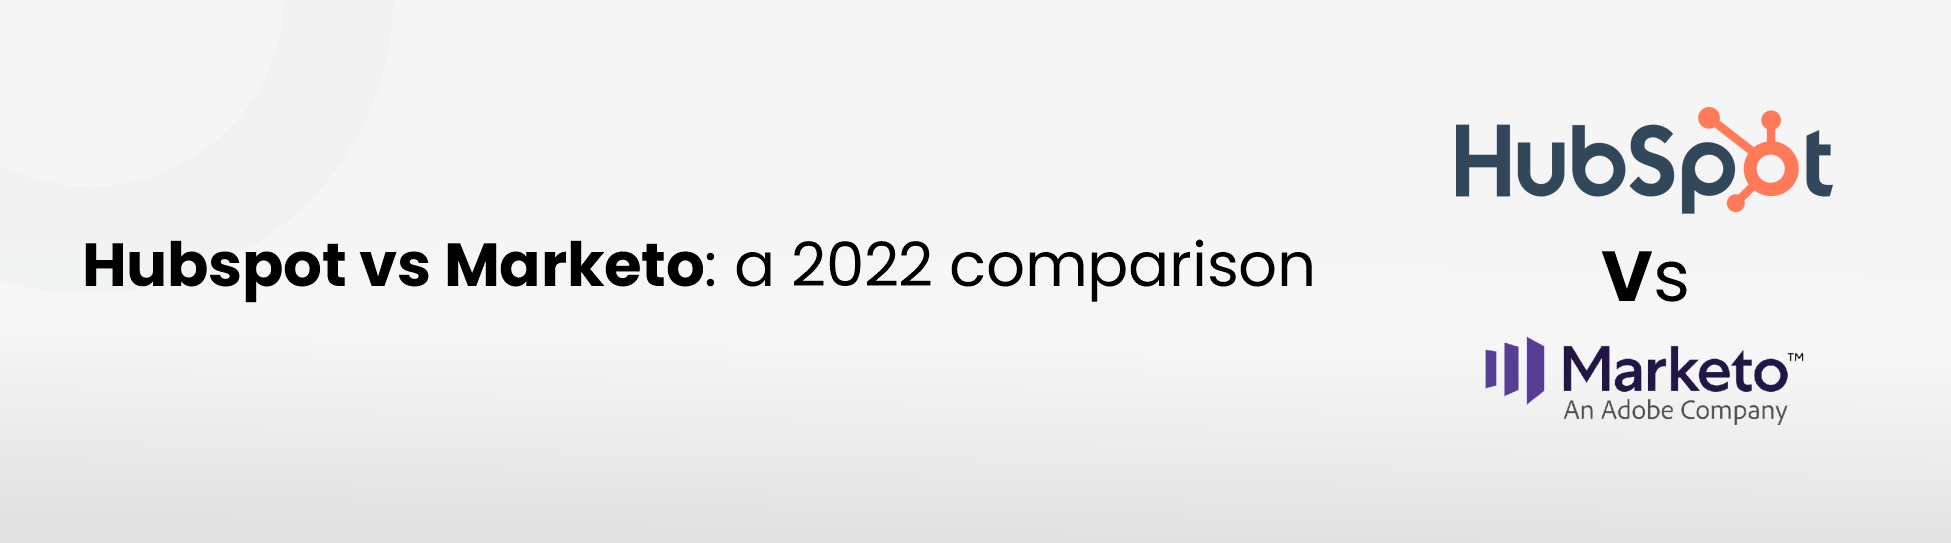 Hubspot-vs-Marketo-a-2022-comparison